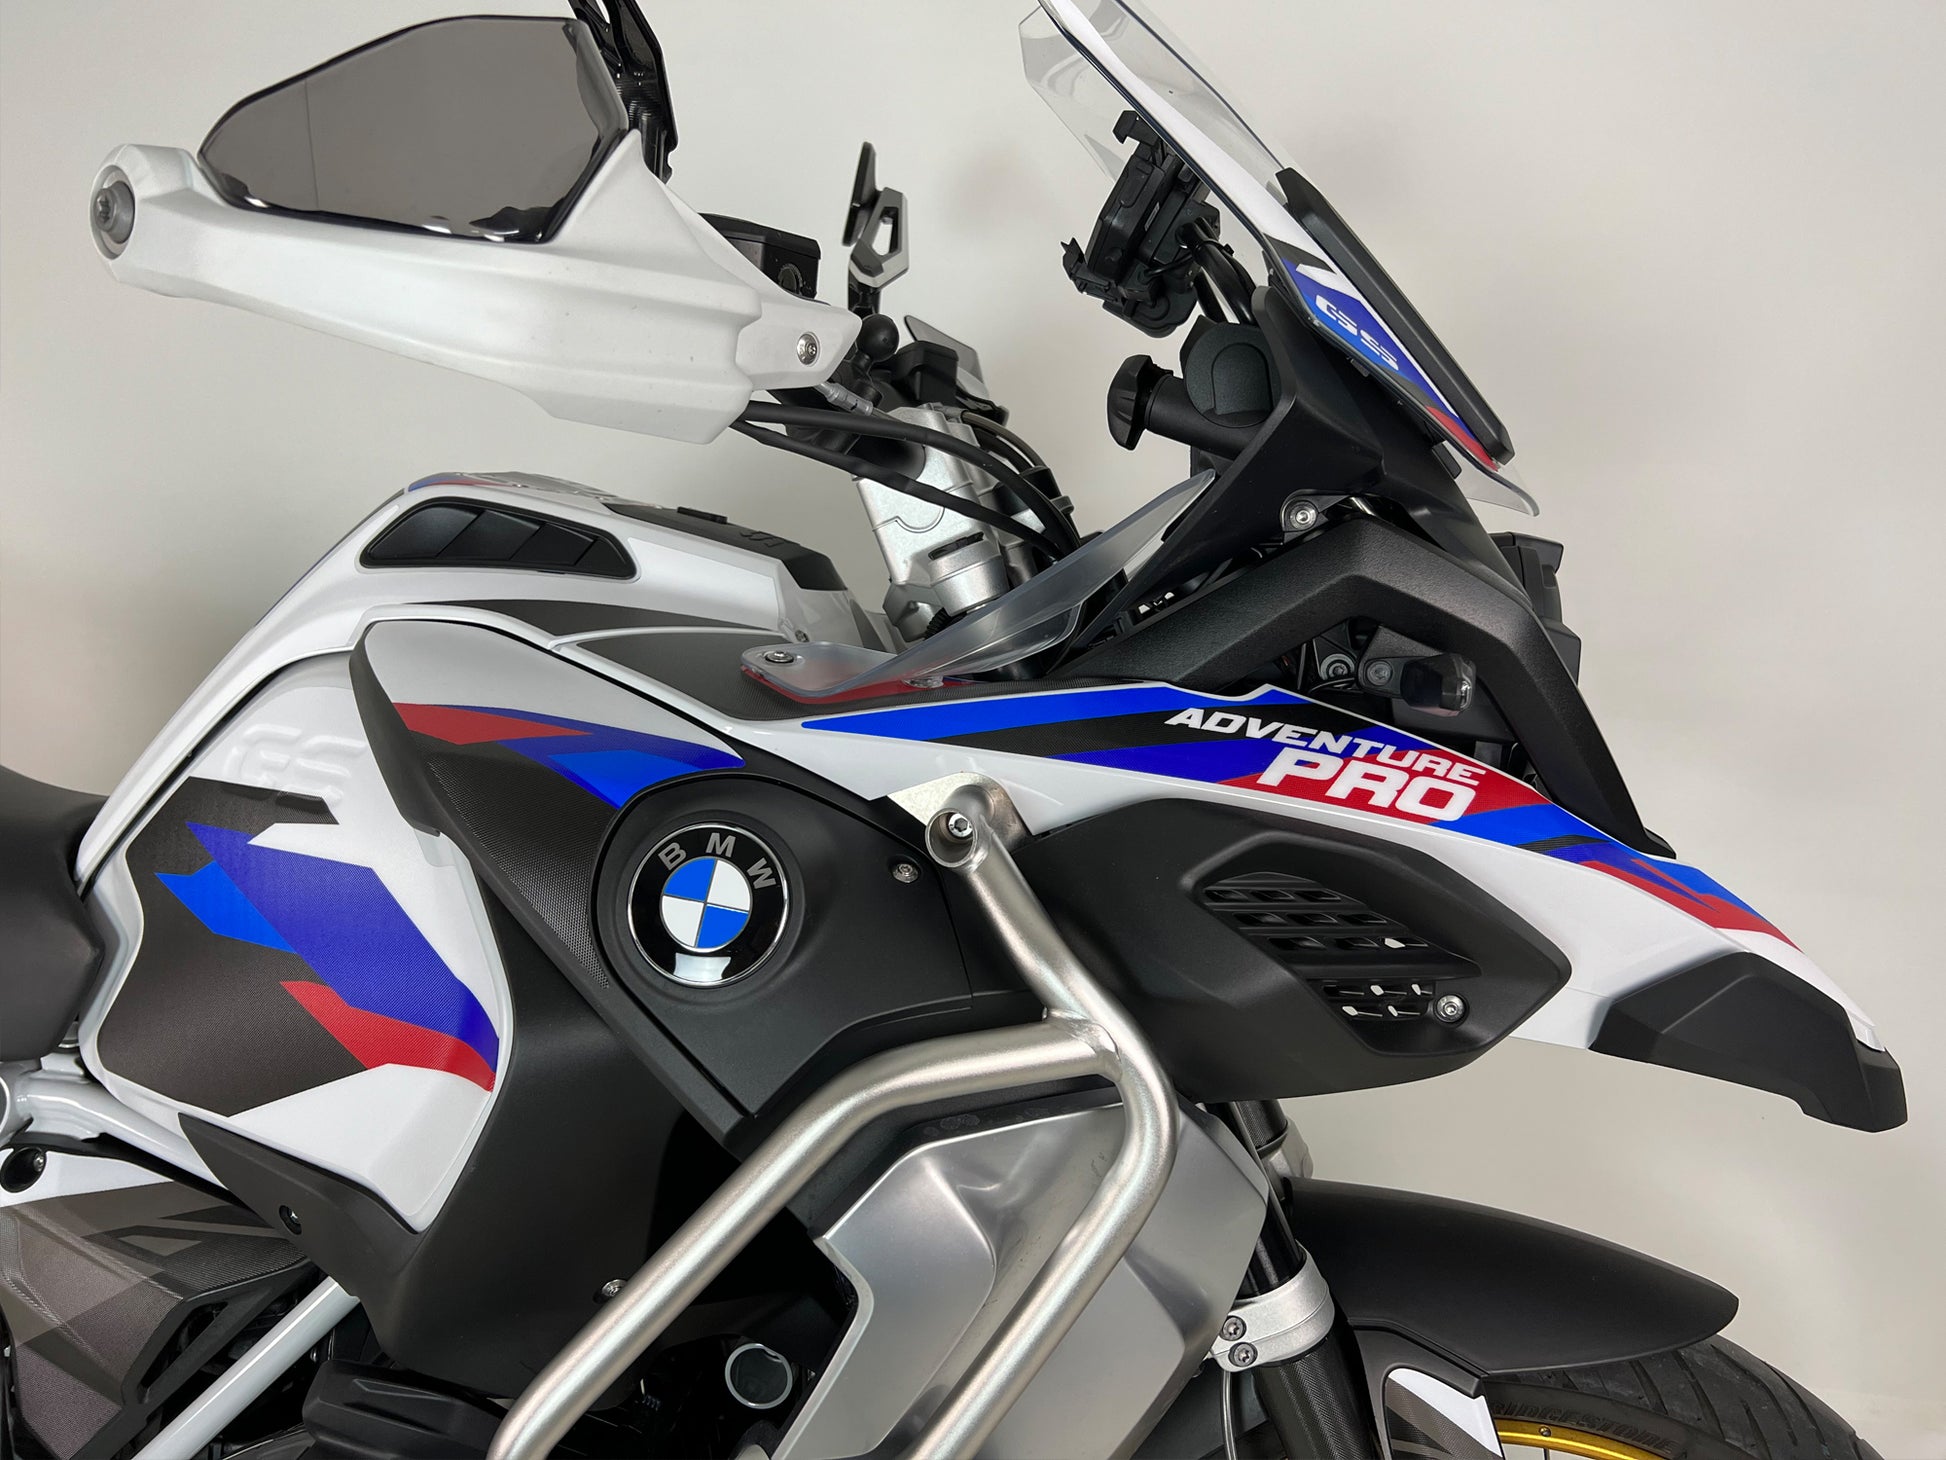 Nouveau pour Bmw R1250gs Lc Adv R 1250 Gs Adventure R1250gsa 2019-2021  Gauche & droite Réservoir Pad Cover Sticker Accessoires de moto